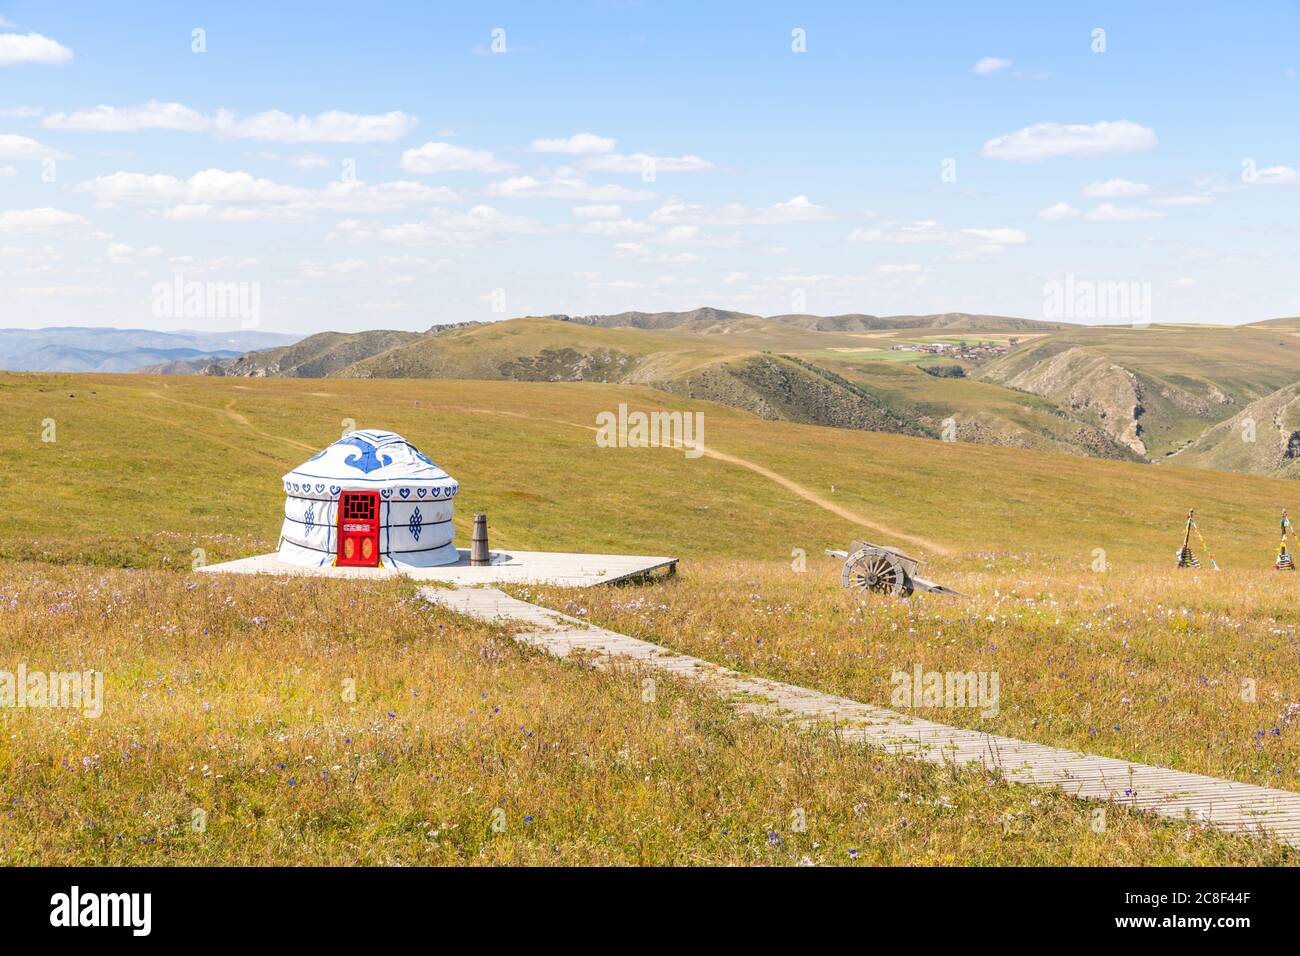 Beautiful white Yurts in Huanghuagou Huitengxile grassland near Hohhot, Inner Mongolia, China Stock Photo